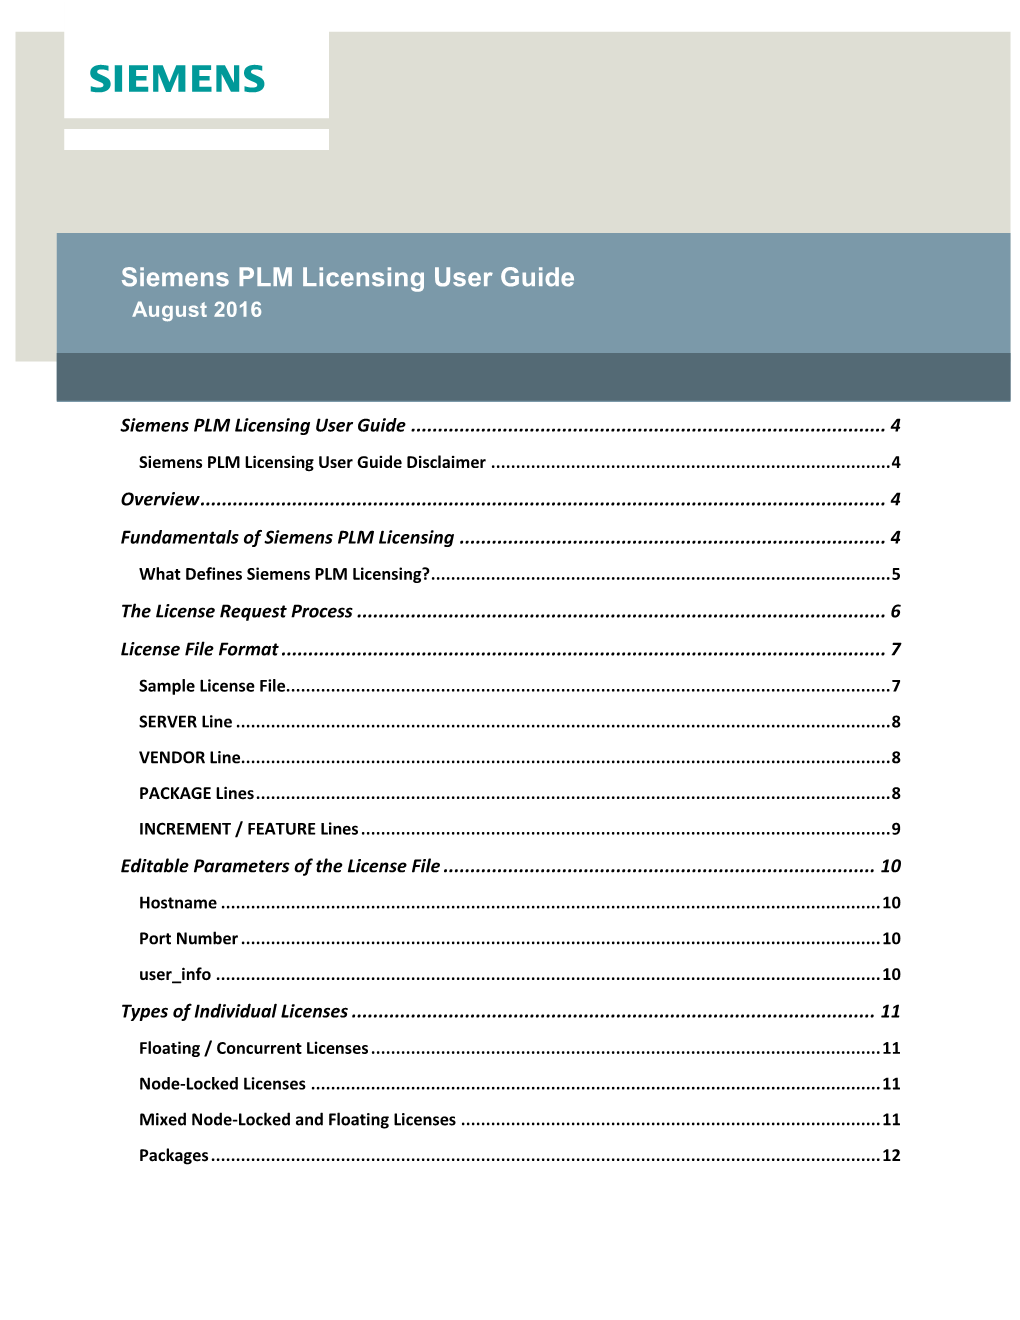 Siemens PLM Licensing User Guide August 2016